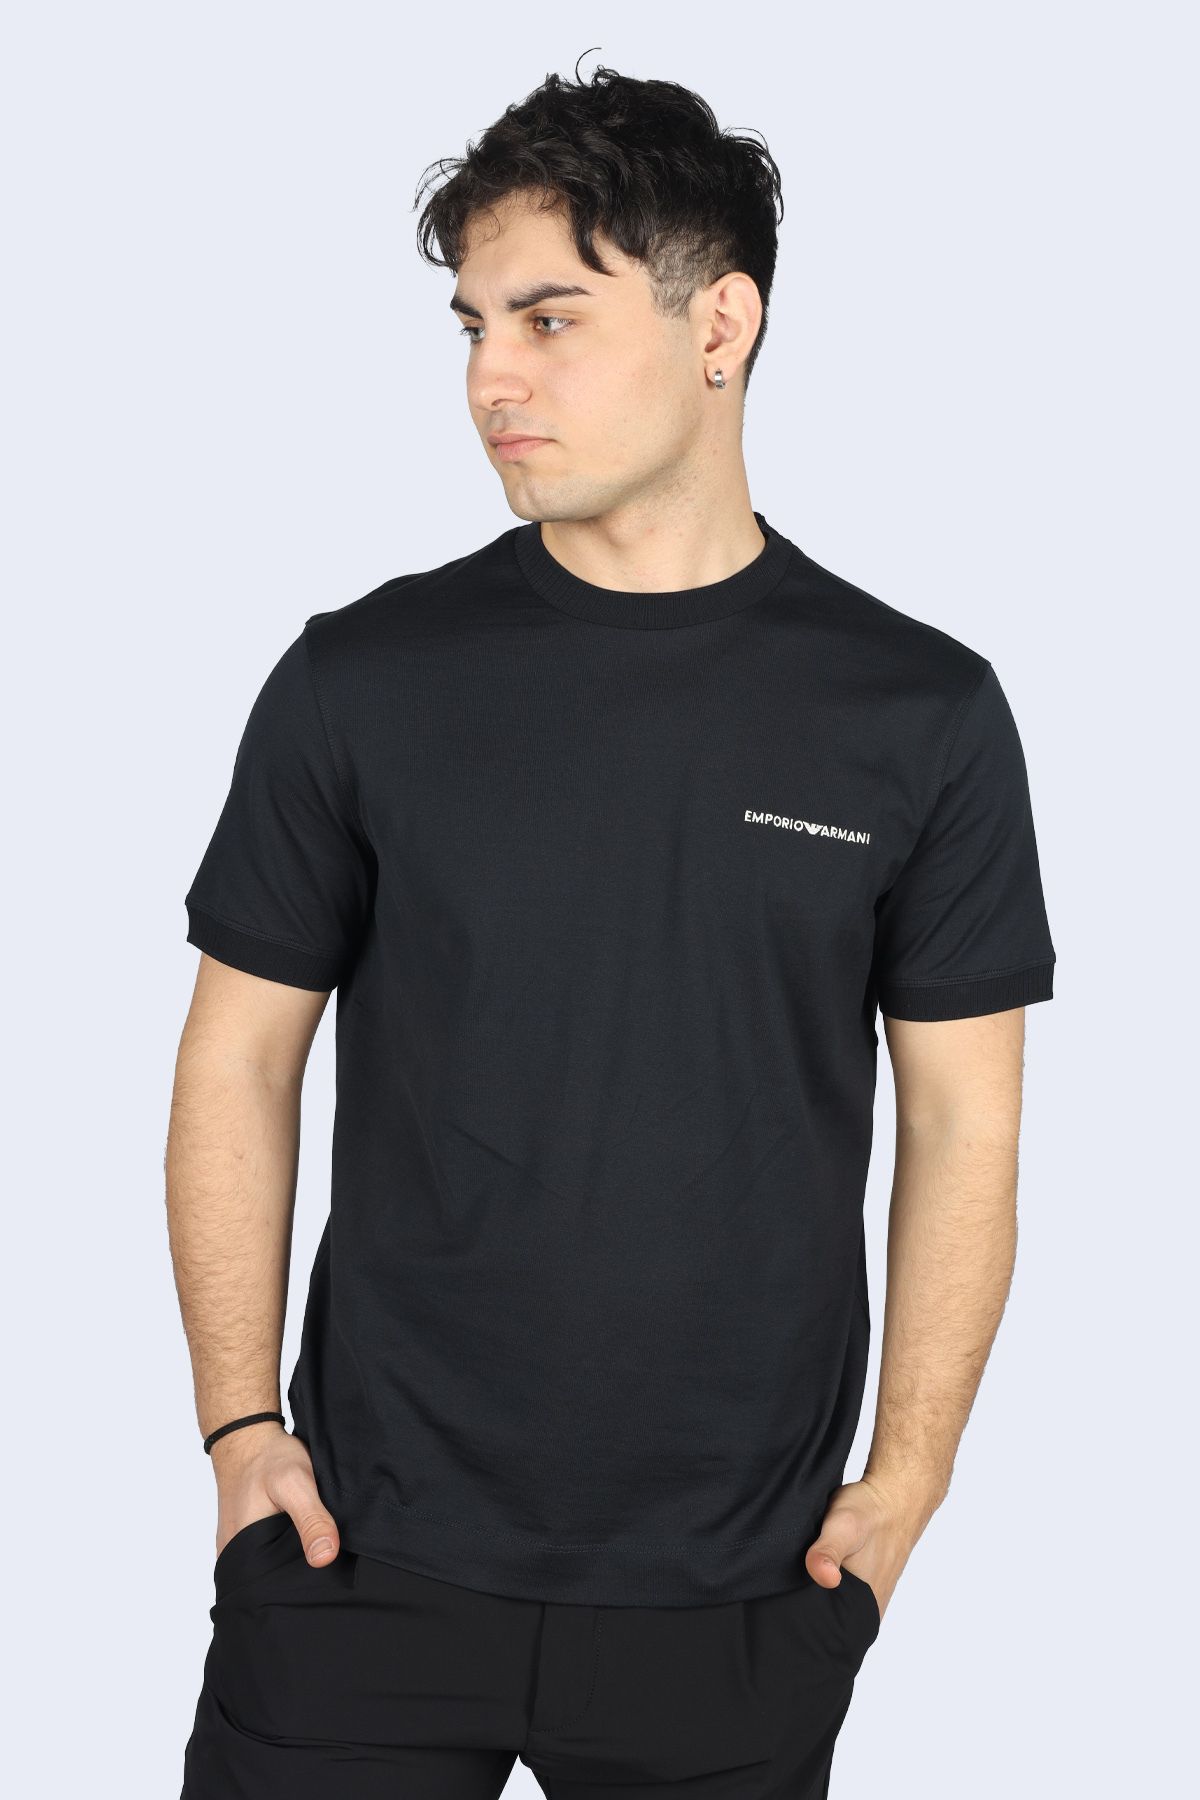 Emporio Armani Erkek Marka Logolu Pamuklu Normal Kalıp Günlük Antrasit T-Shirt 3D1TN3 1JOCZ-0966